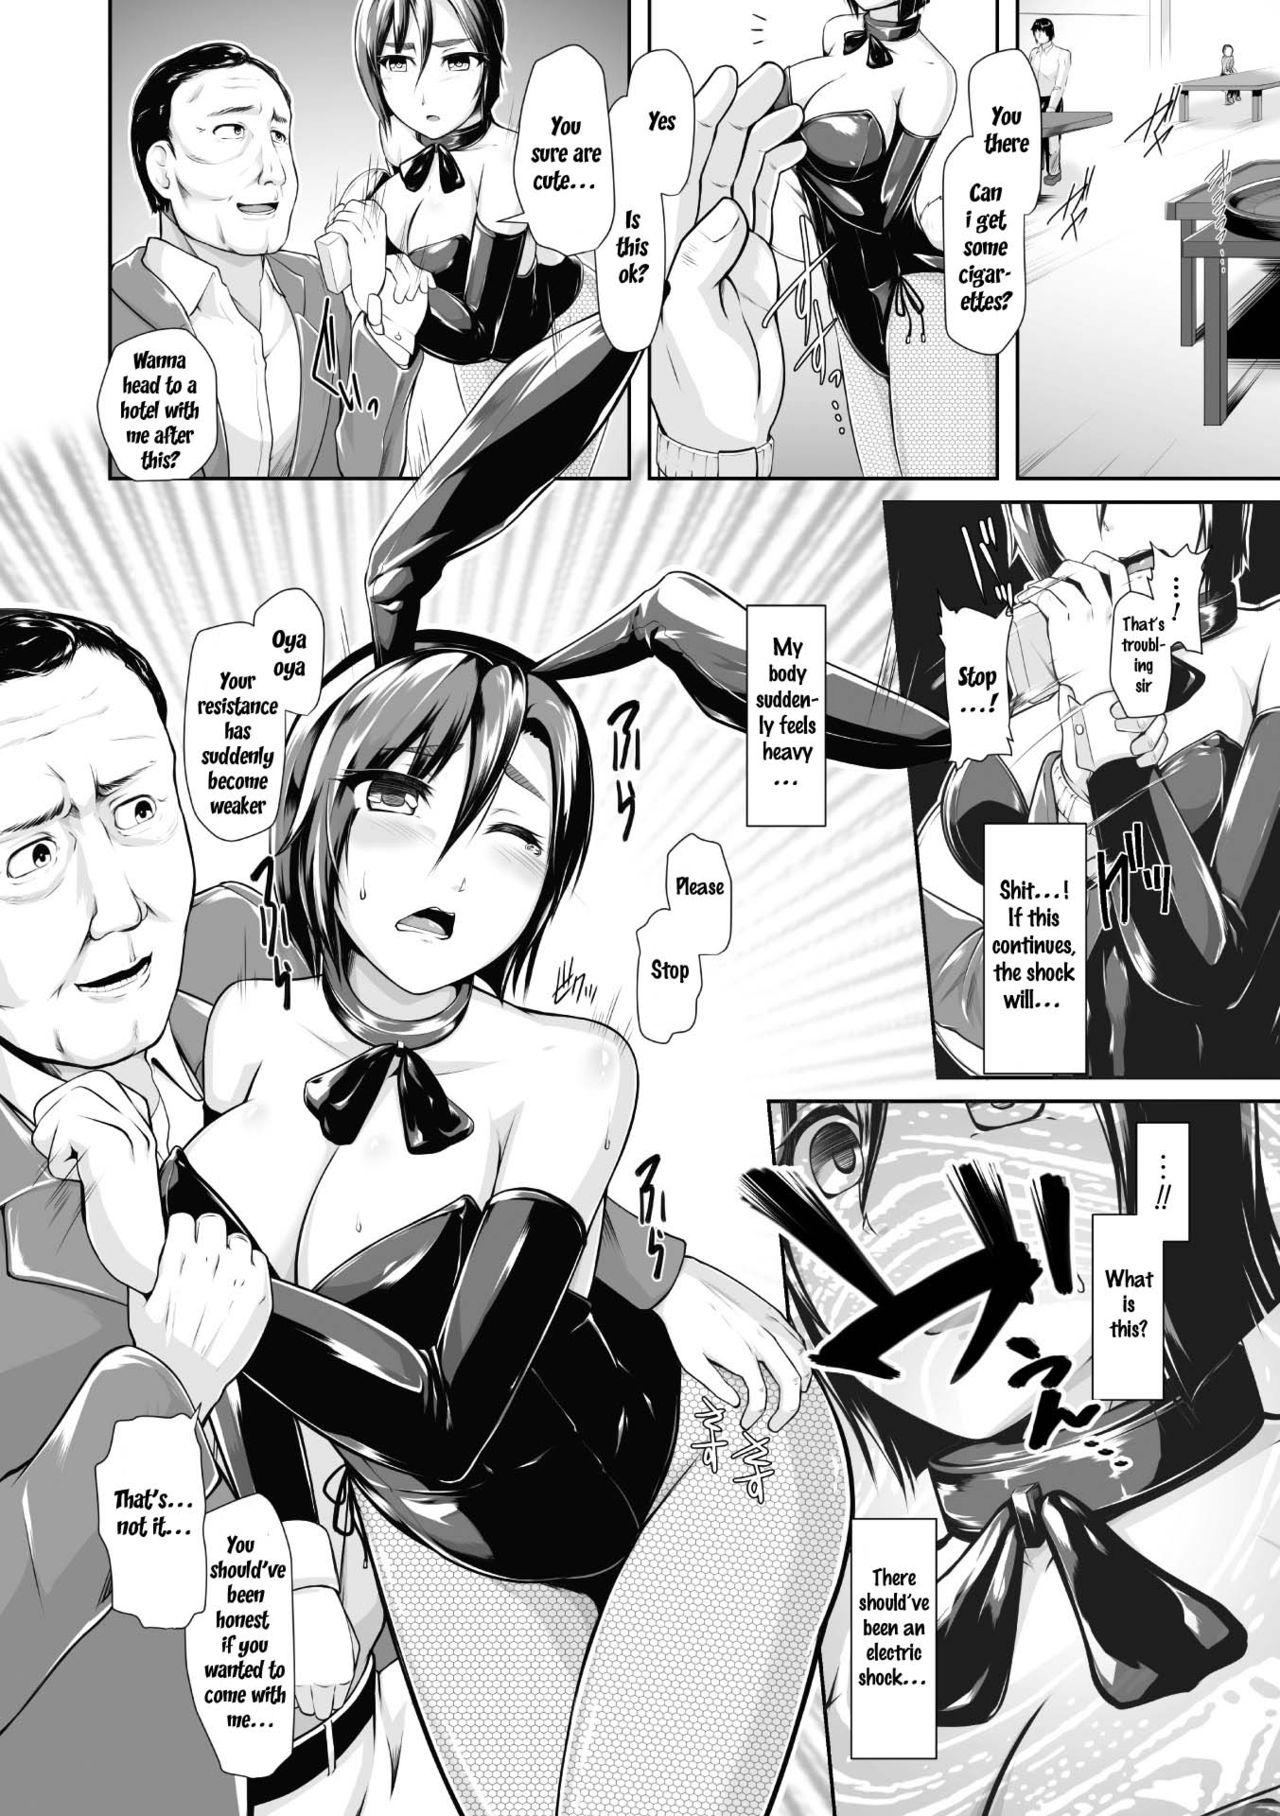 Hardcore Porno 2D Comic Magazine Waki Fechi Bunny Girl Vol.1 Ch 1-3 Twerking - Page 8